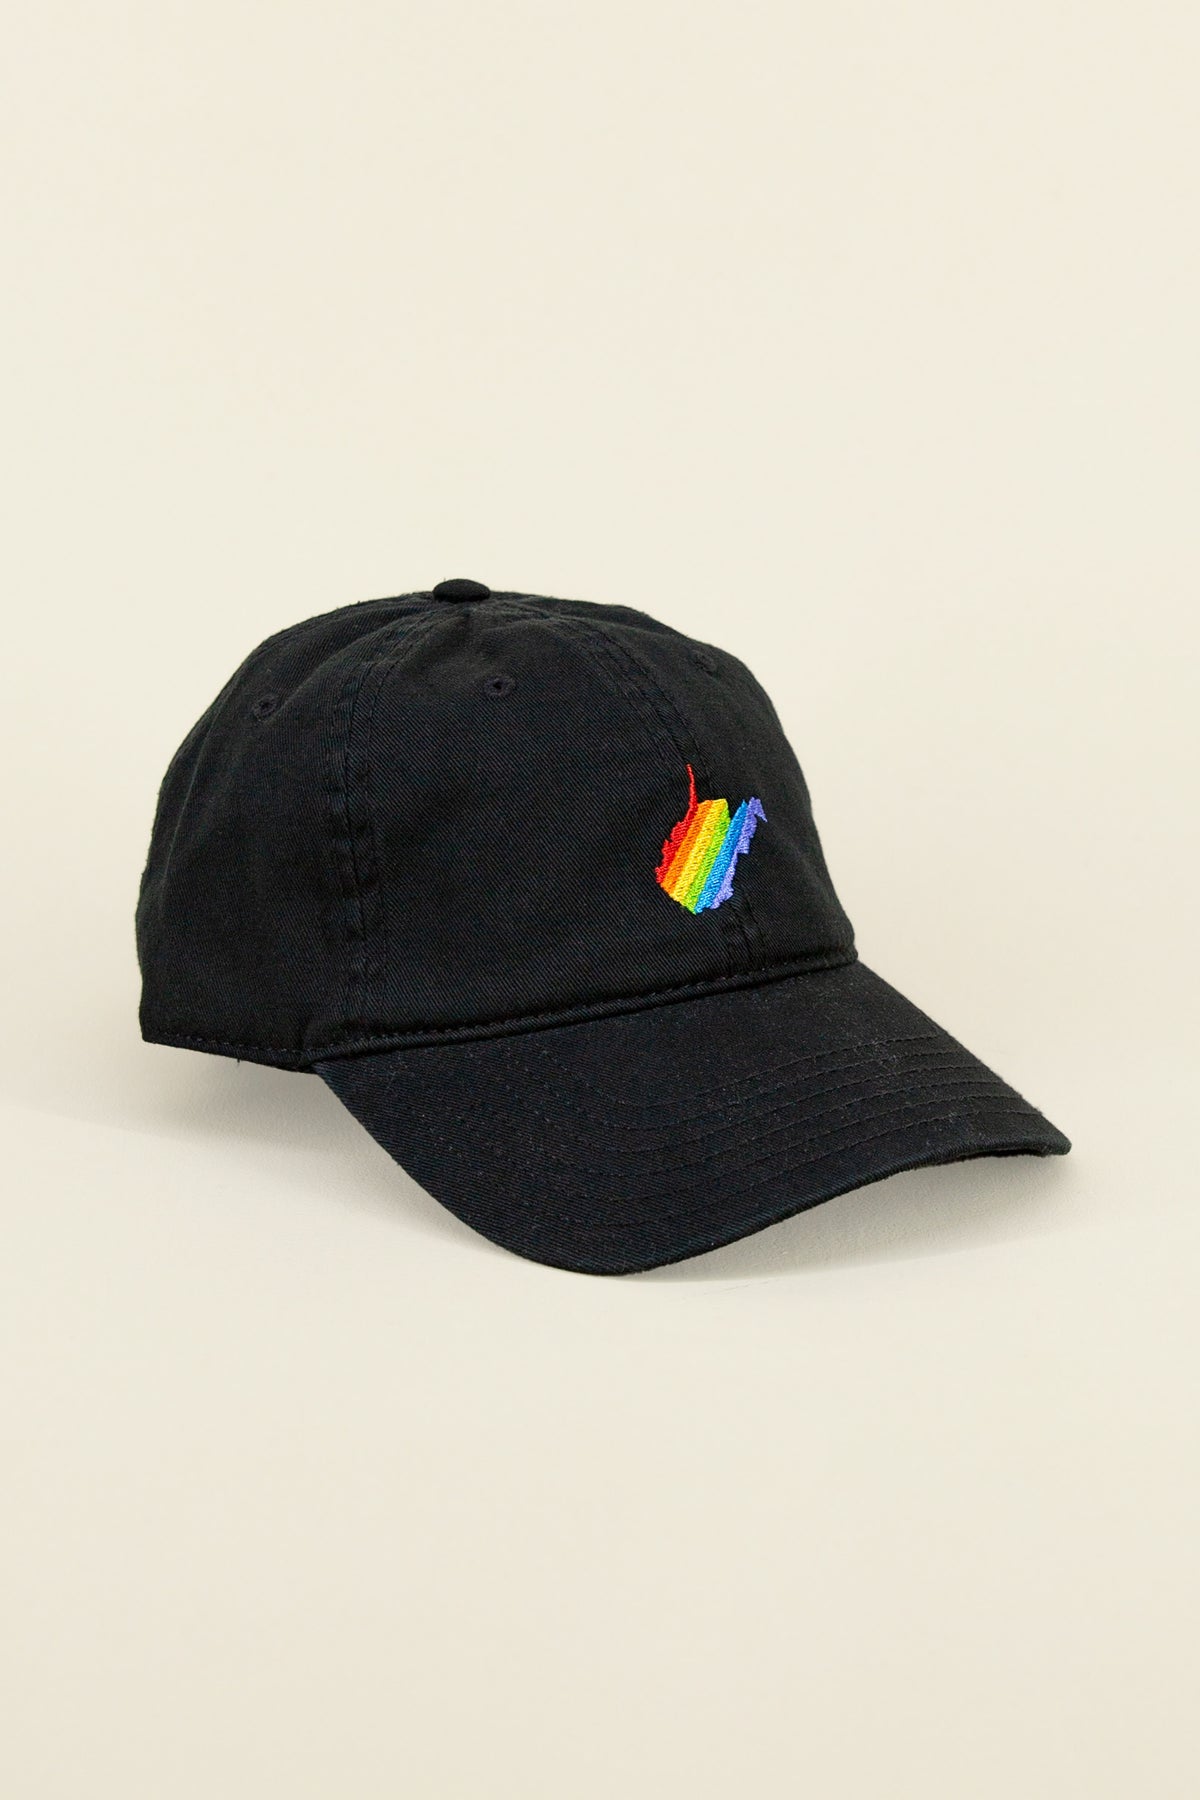 wv pride hat